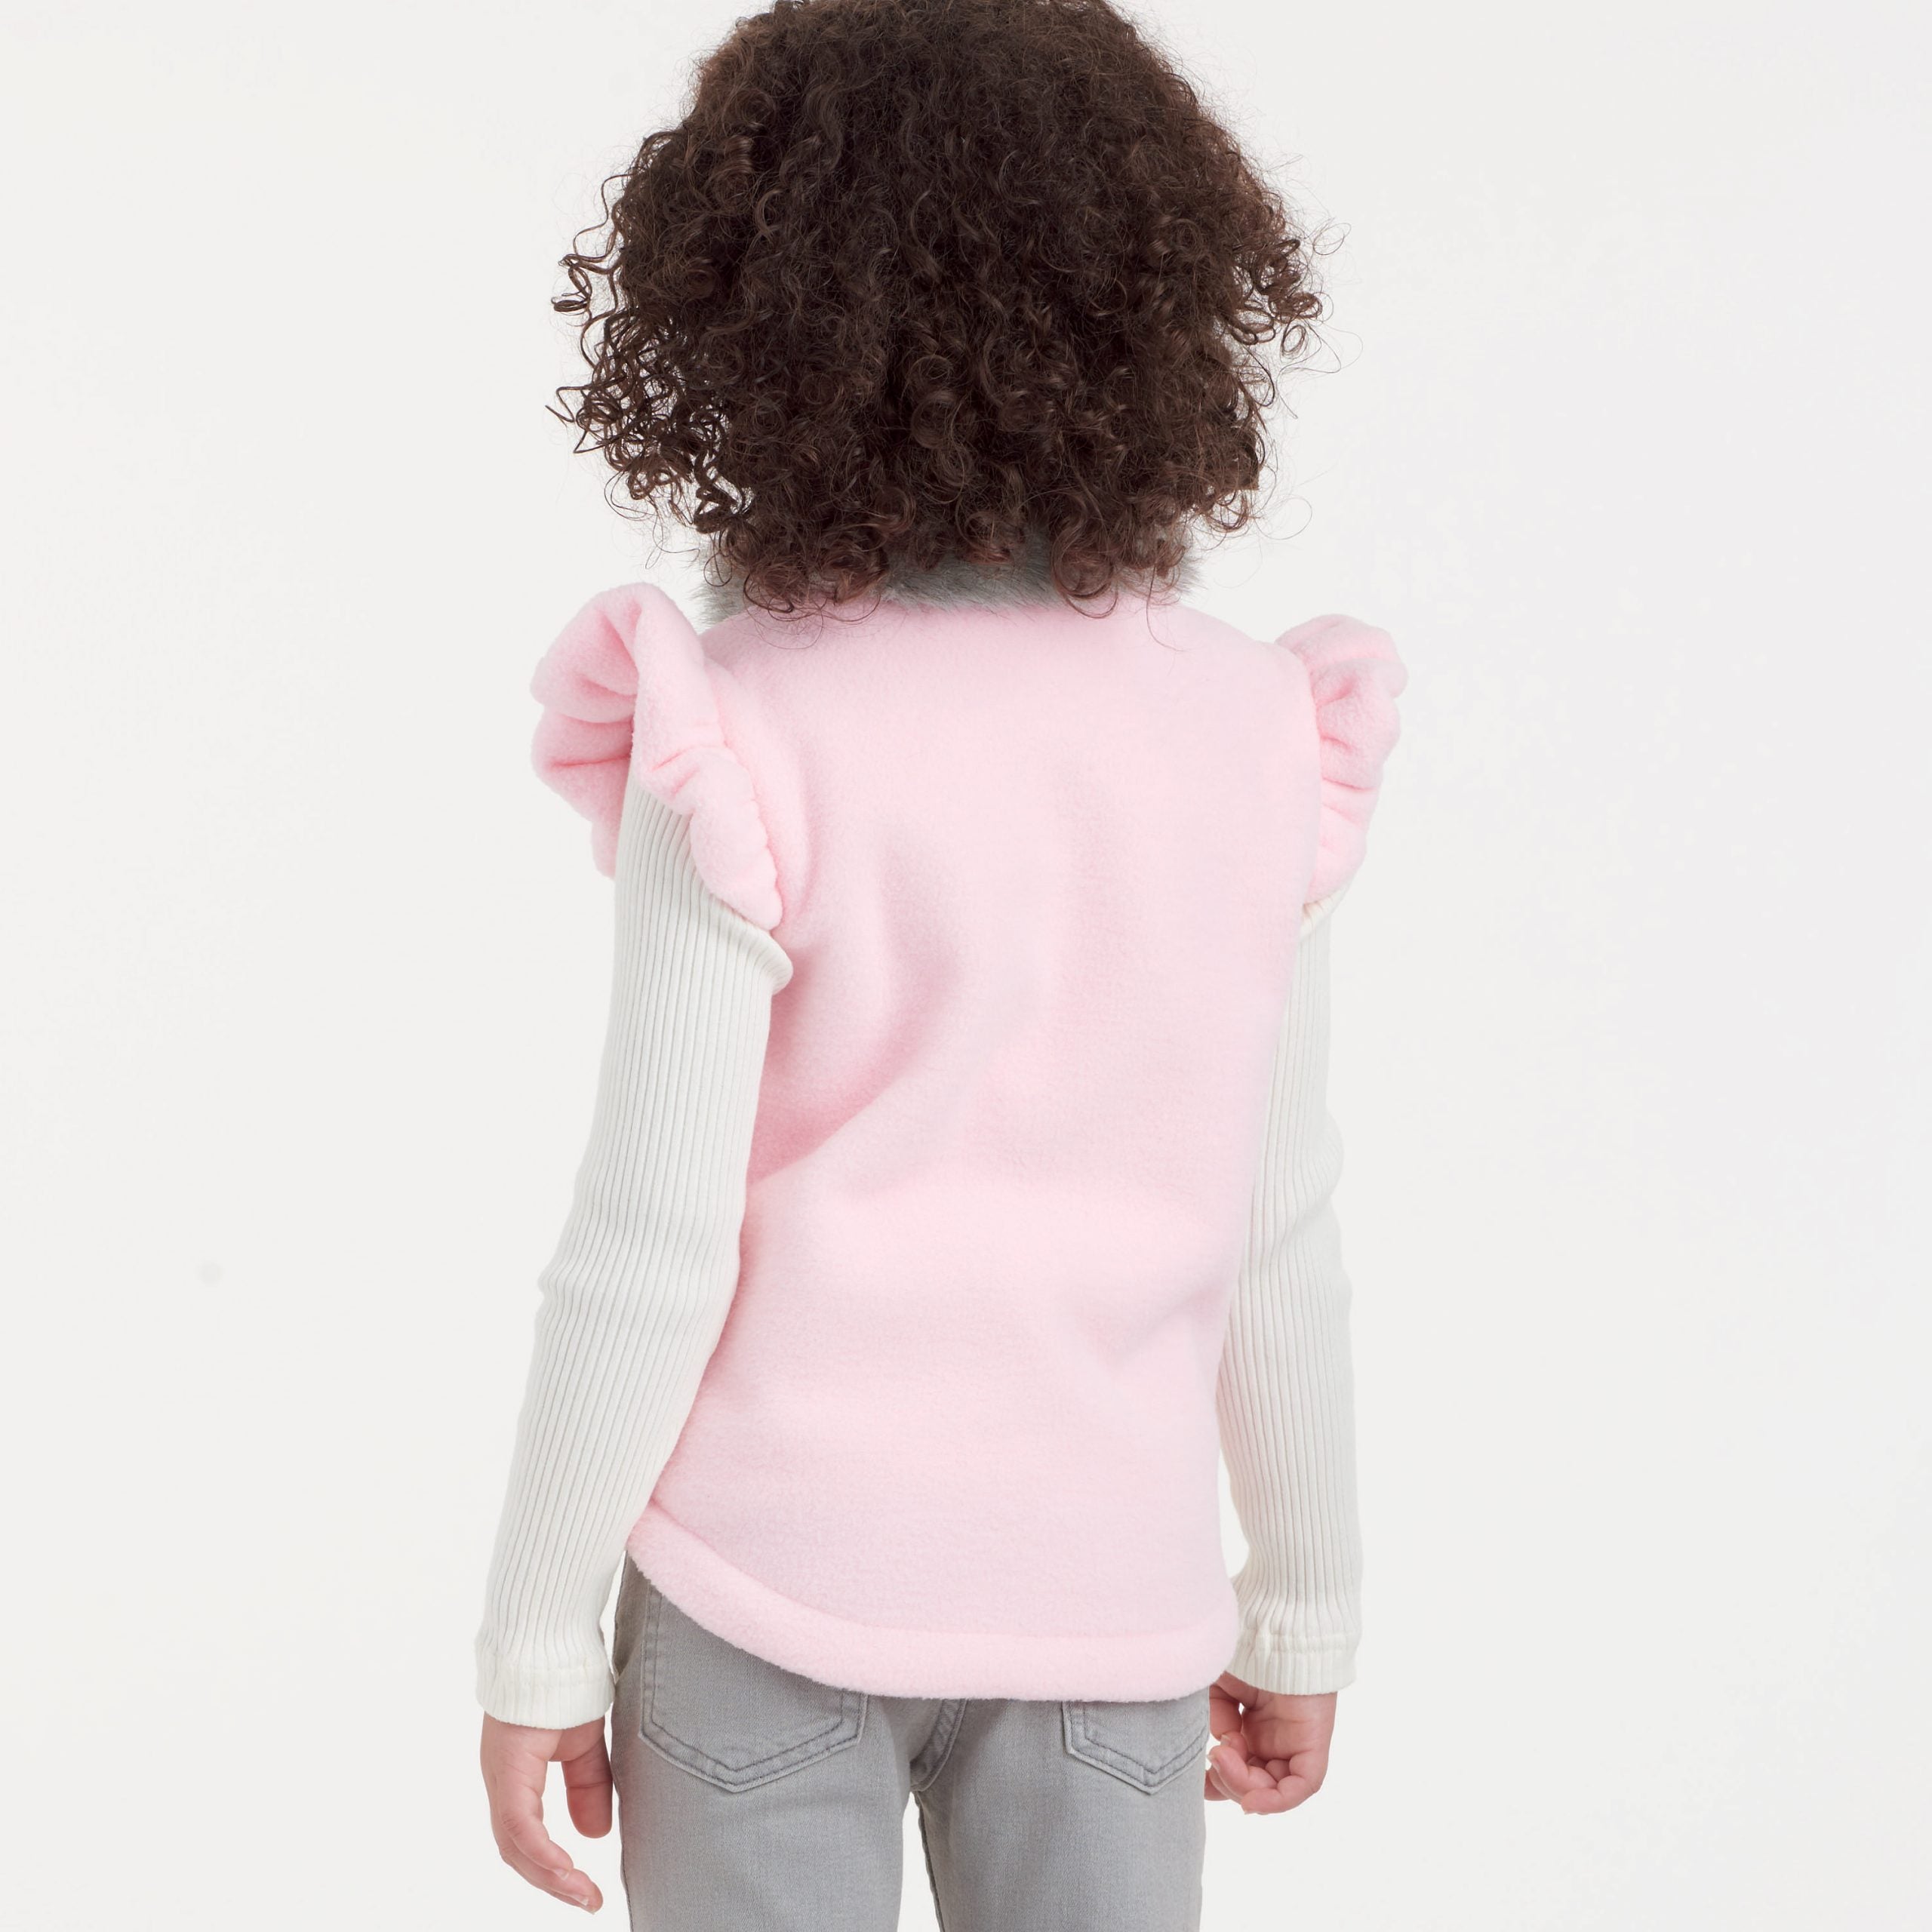 Simplicity Children's Vest S9193